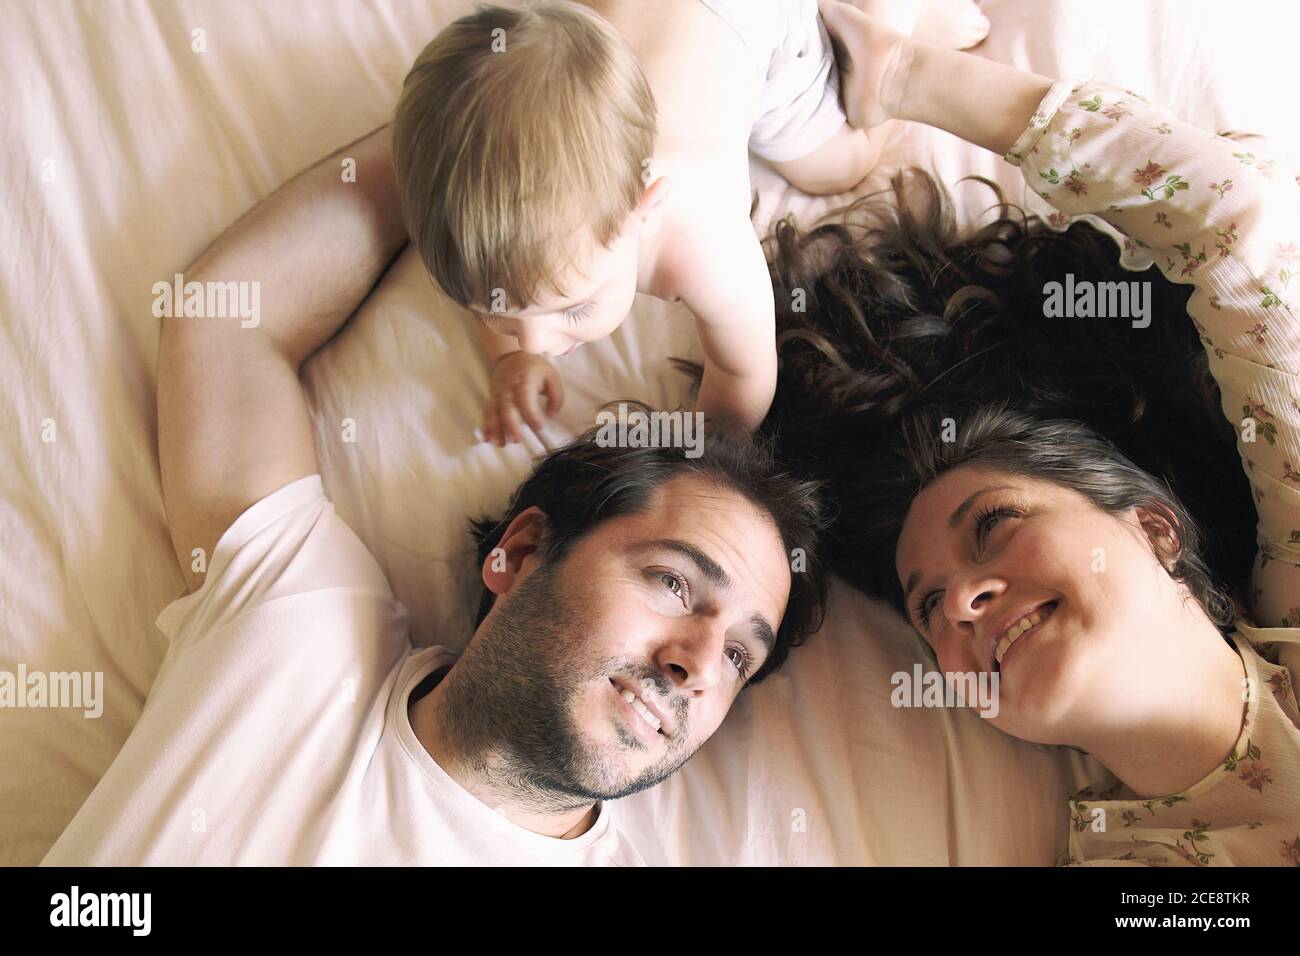 Familie in der Privatsphäre des Schlafzimmers III Stockfoto